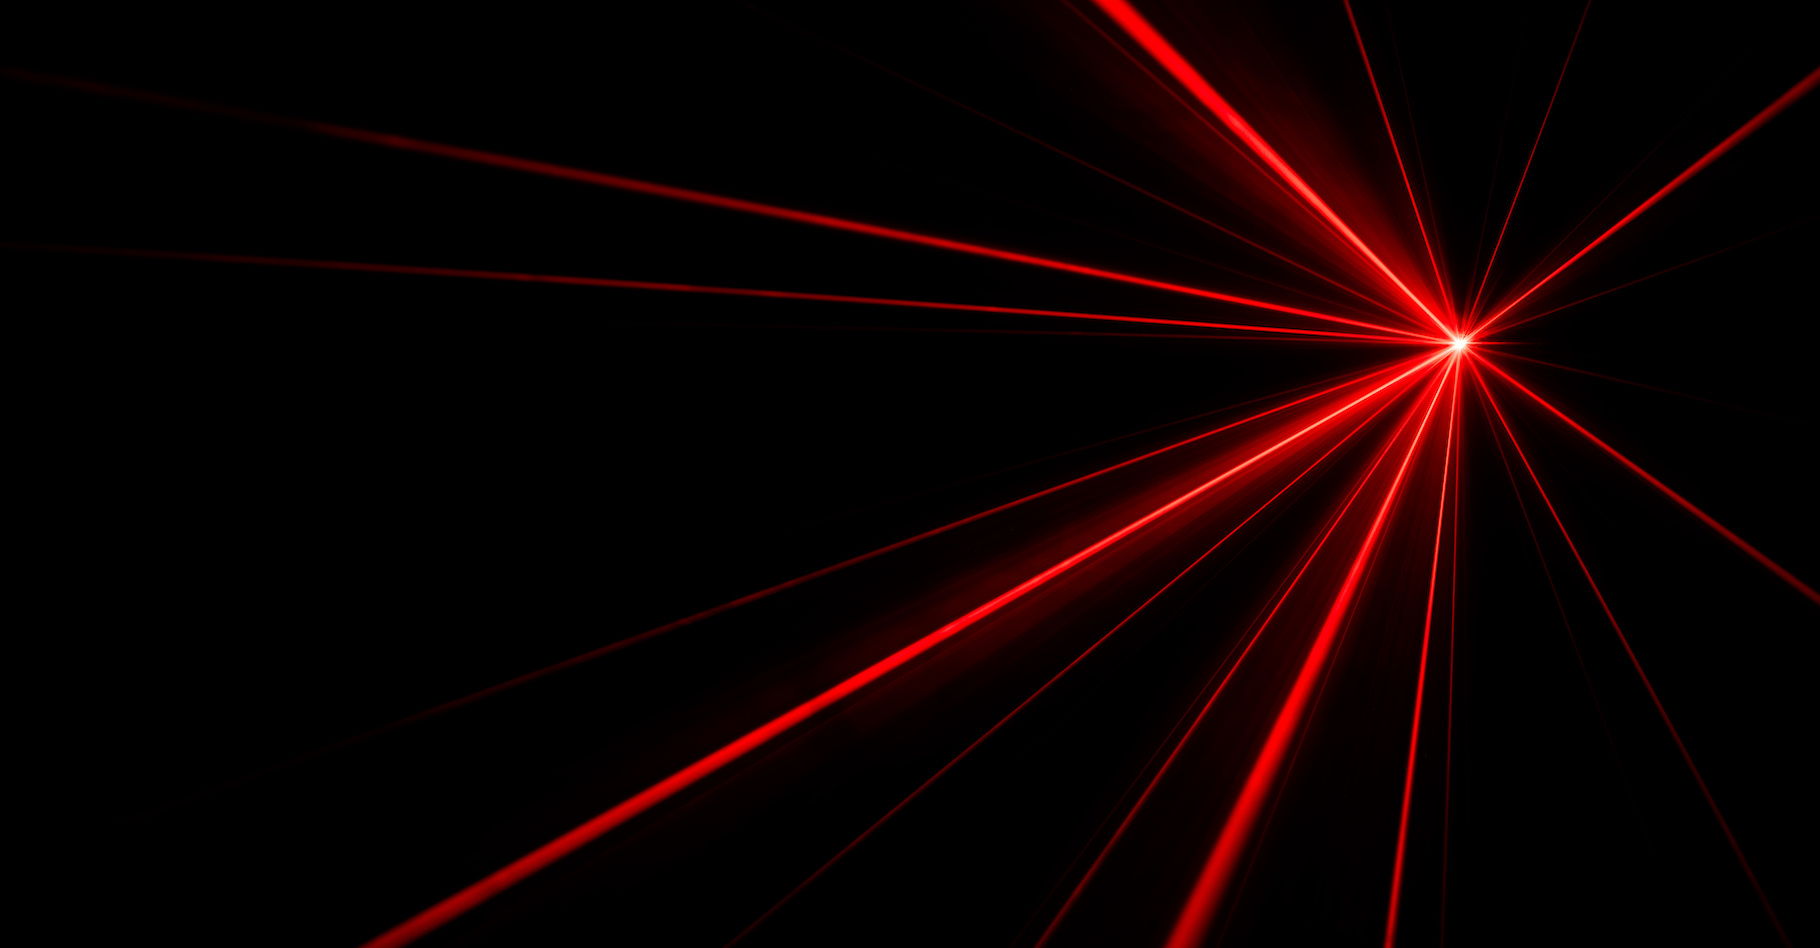 Les travaux d’un physicien de l’université de Californie à Riverside (États-Unis) pourraient aider à concevoir enfin un laser qui — à l’image de ce que fait un laser classique dans le visible — produirait des rayons gamma cohérents. © donatas1205, Adobe Stock